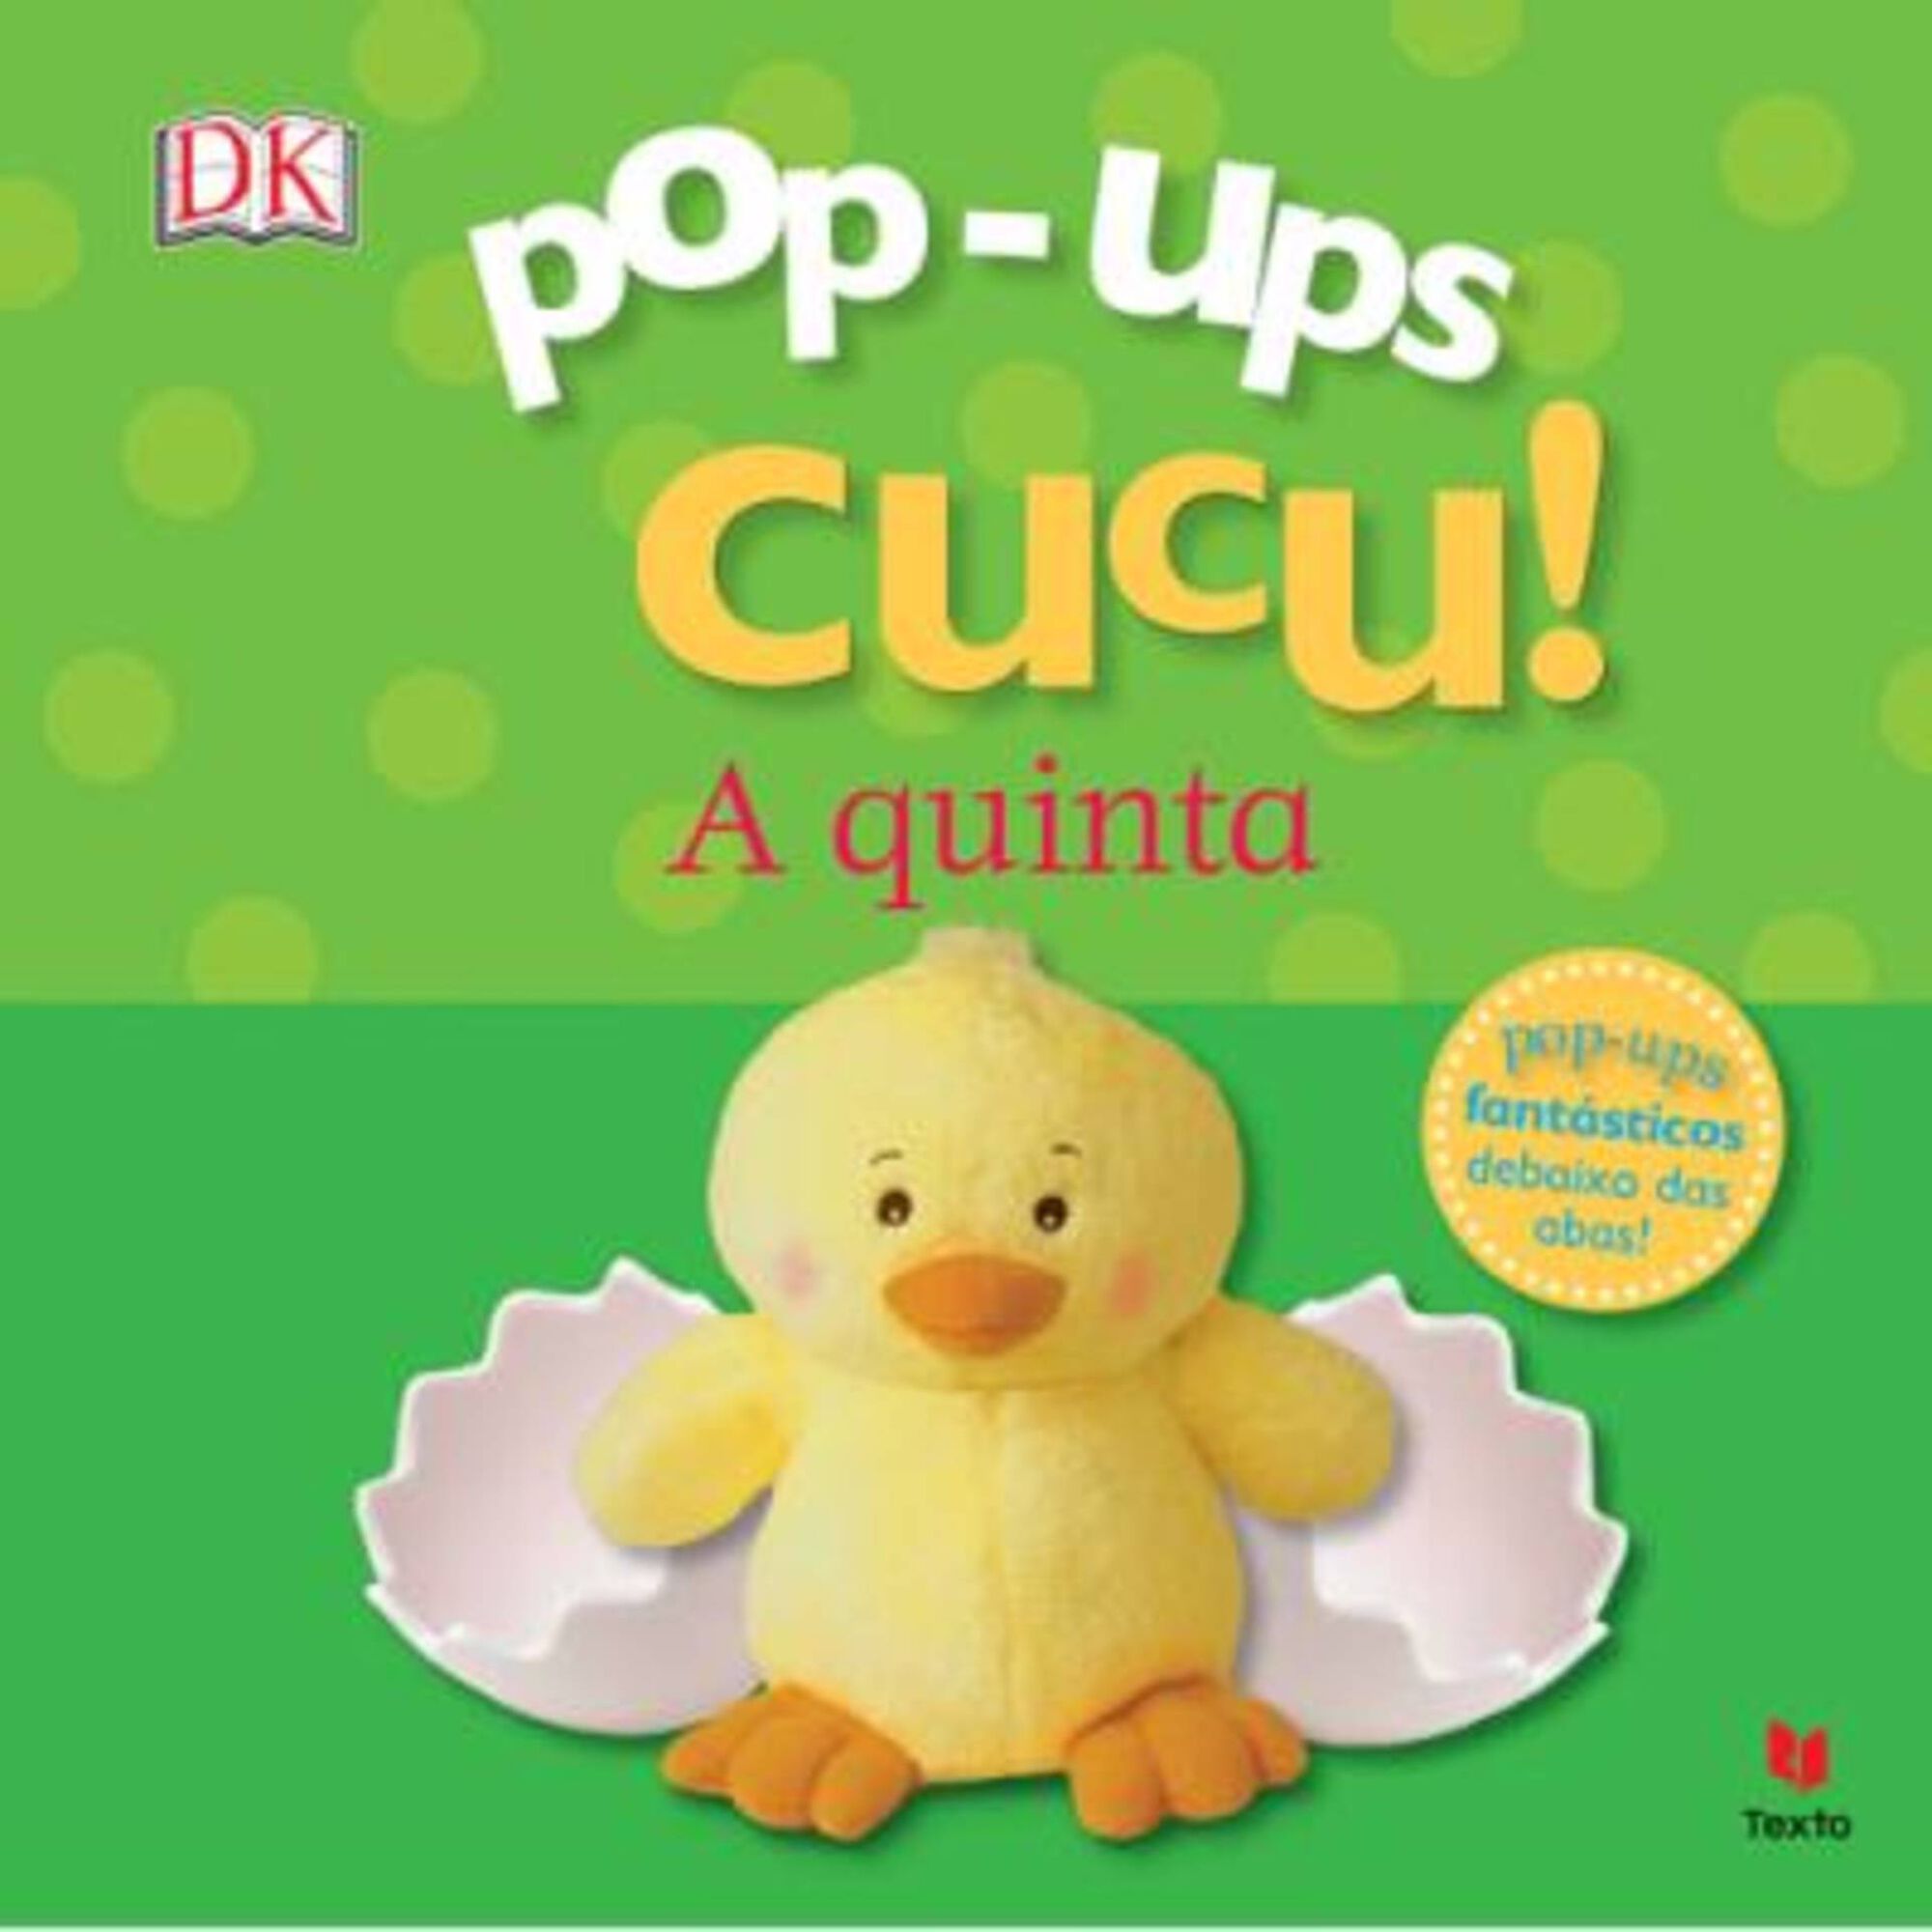 Pop-Ups Cucu! A Quinta